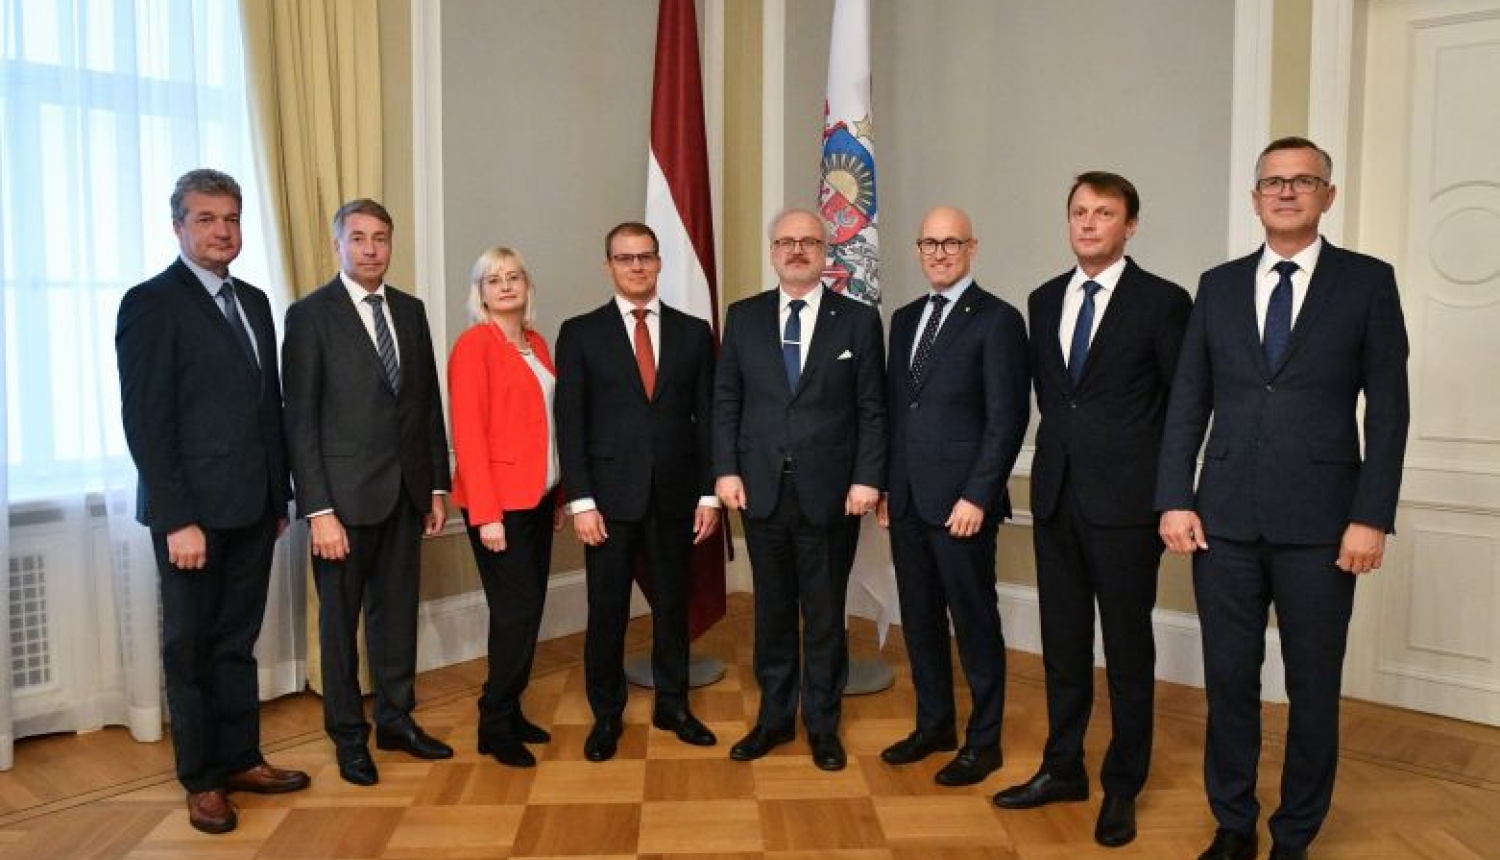 Valsts prezidents ar Saeimas frakciju vadību vienojas par kopīgu darbīgu dialogu valsts ilgtermiņa mērķu labā